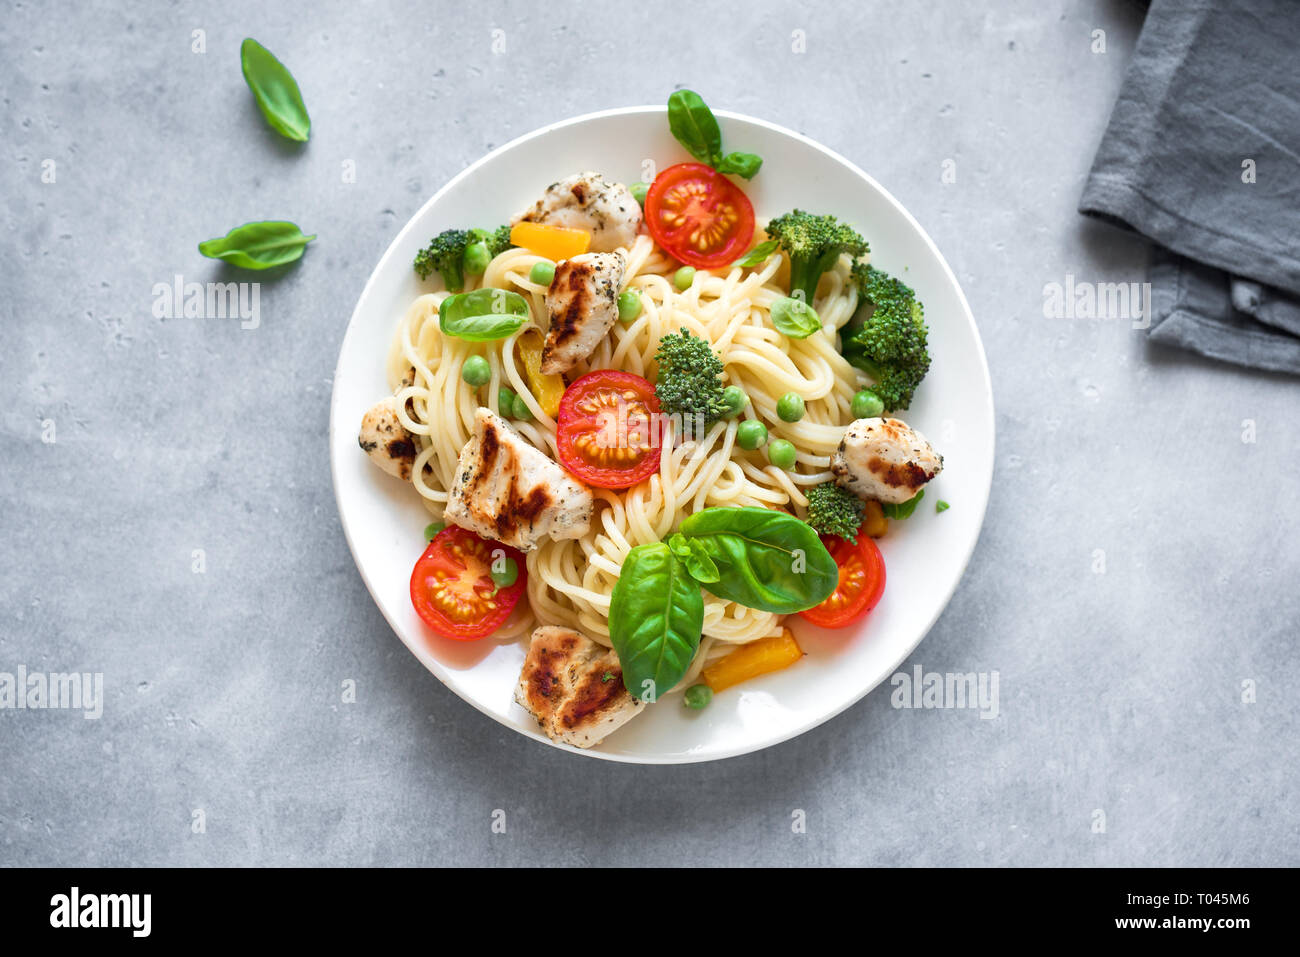 Huhn und Gemüse Pasta. Spaghetti Pasta mit gegrilltem Hähnchen Fleisch,  Gemüse und Basilikum, Ansicht von oben, kopieren. Saisonale Pasta Primavera  Rezept Stockfotografie - Alamy